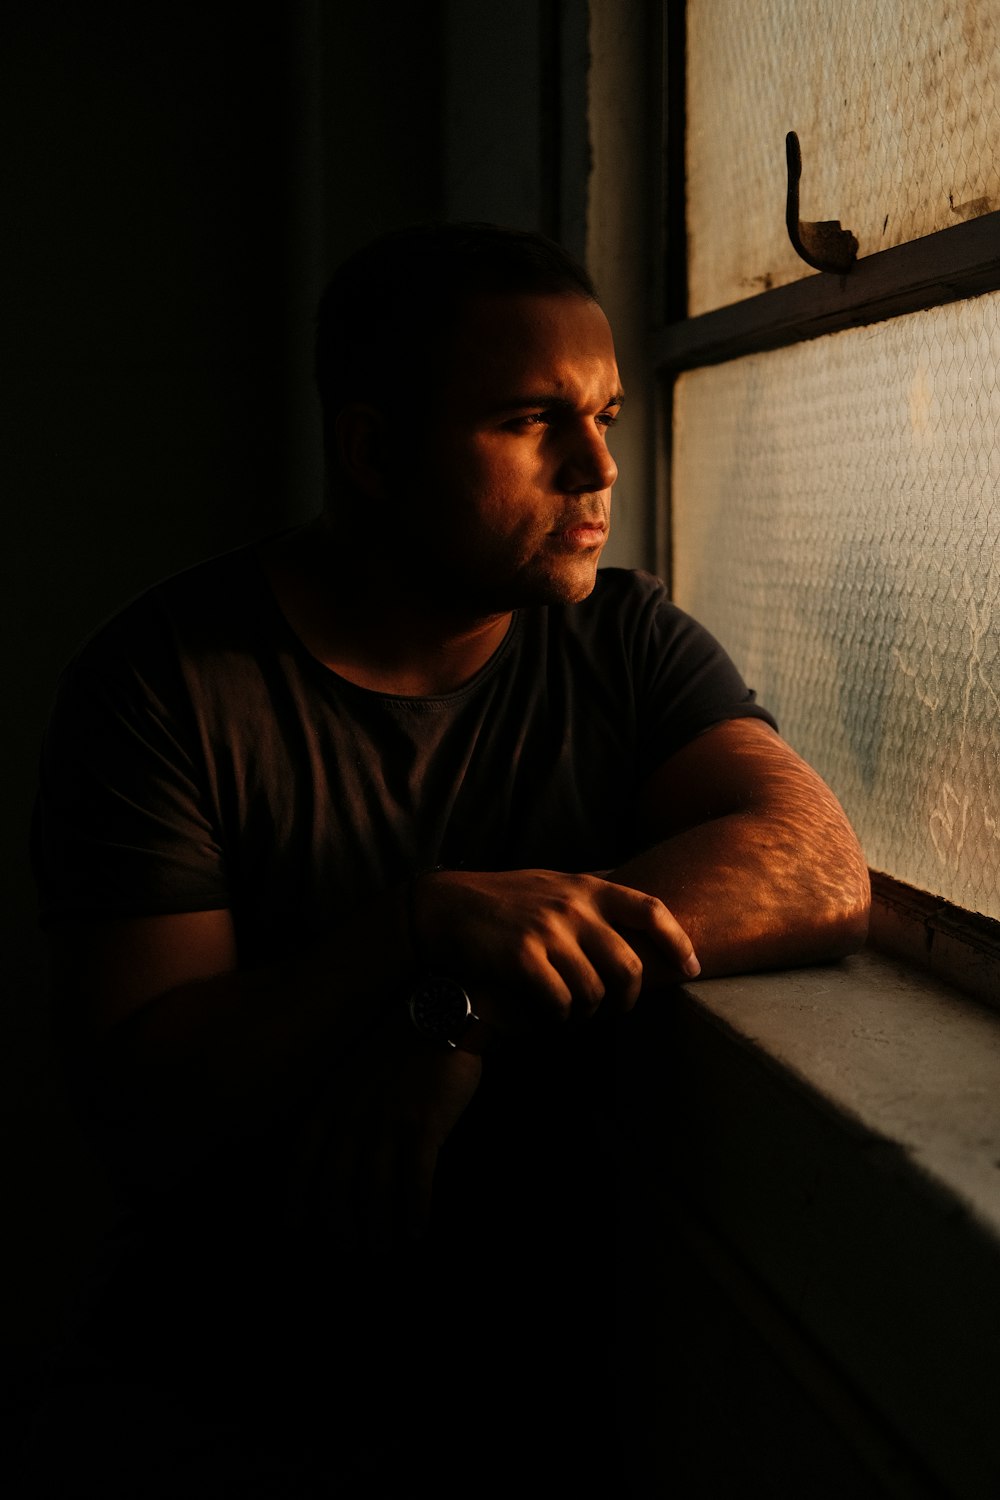 Un hombre mirando por una ventana en la oscuridad